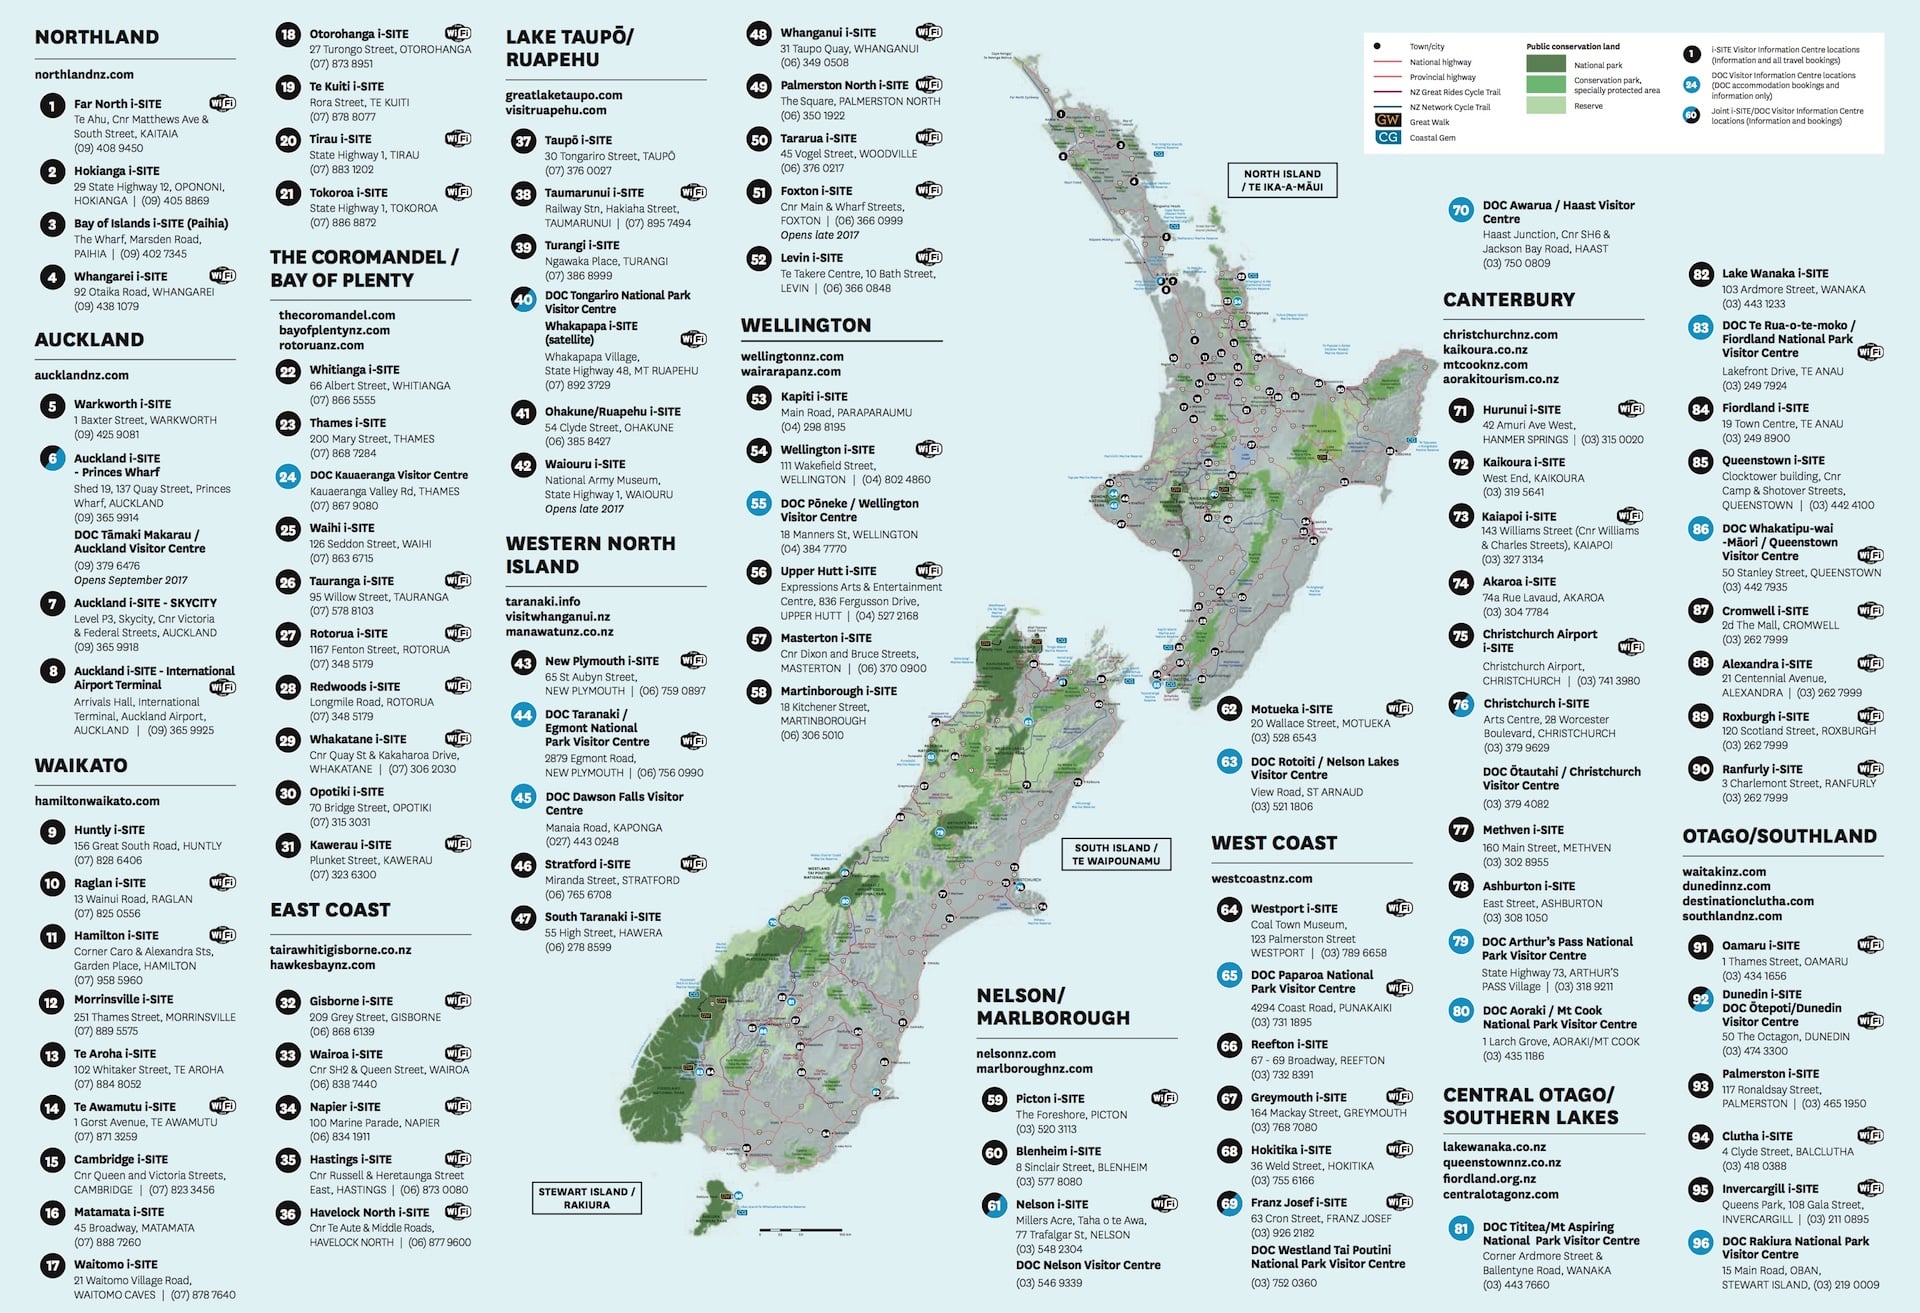 紐西蘭 New Zealand 旅行必知旅客服務中心「i-Site」